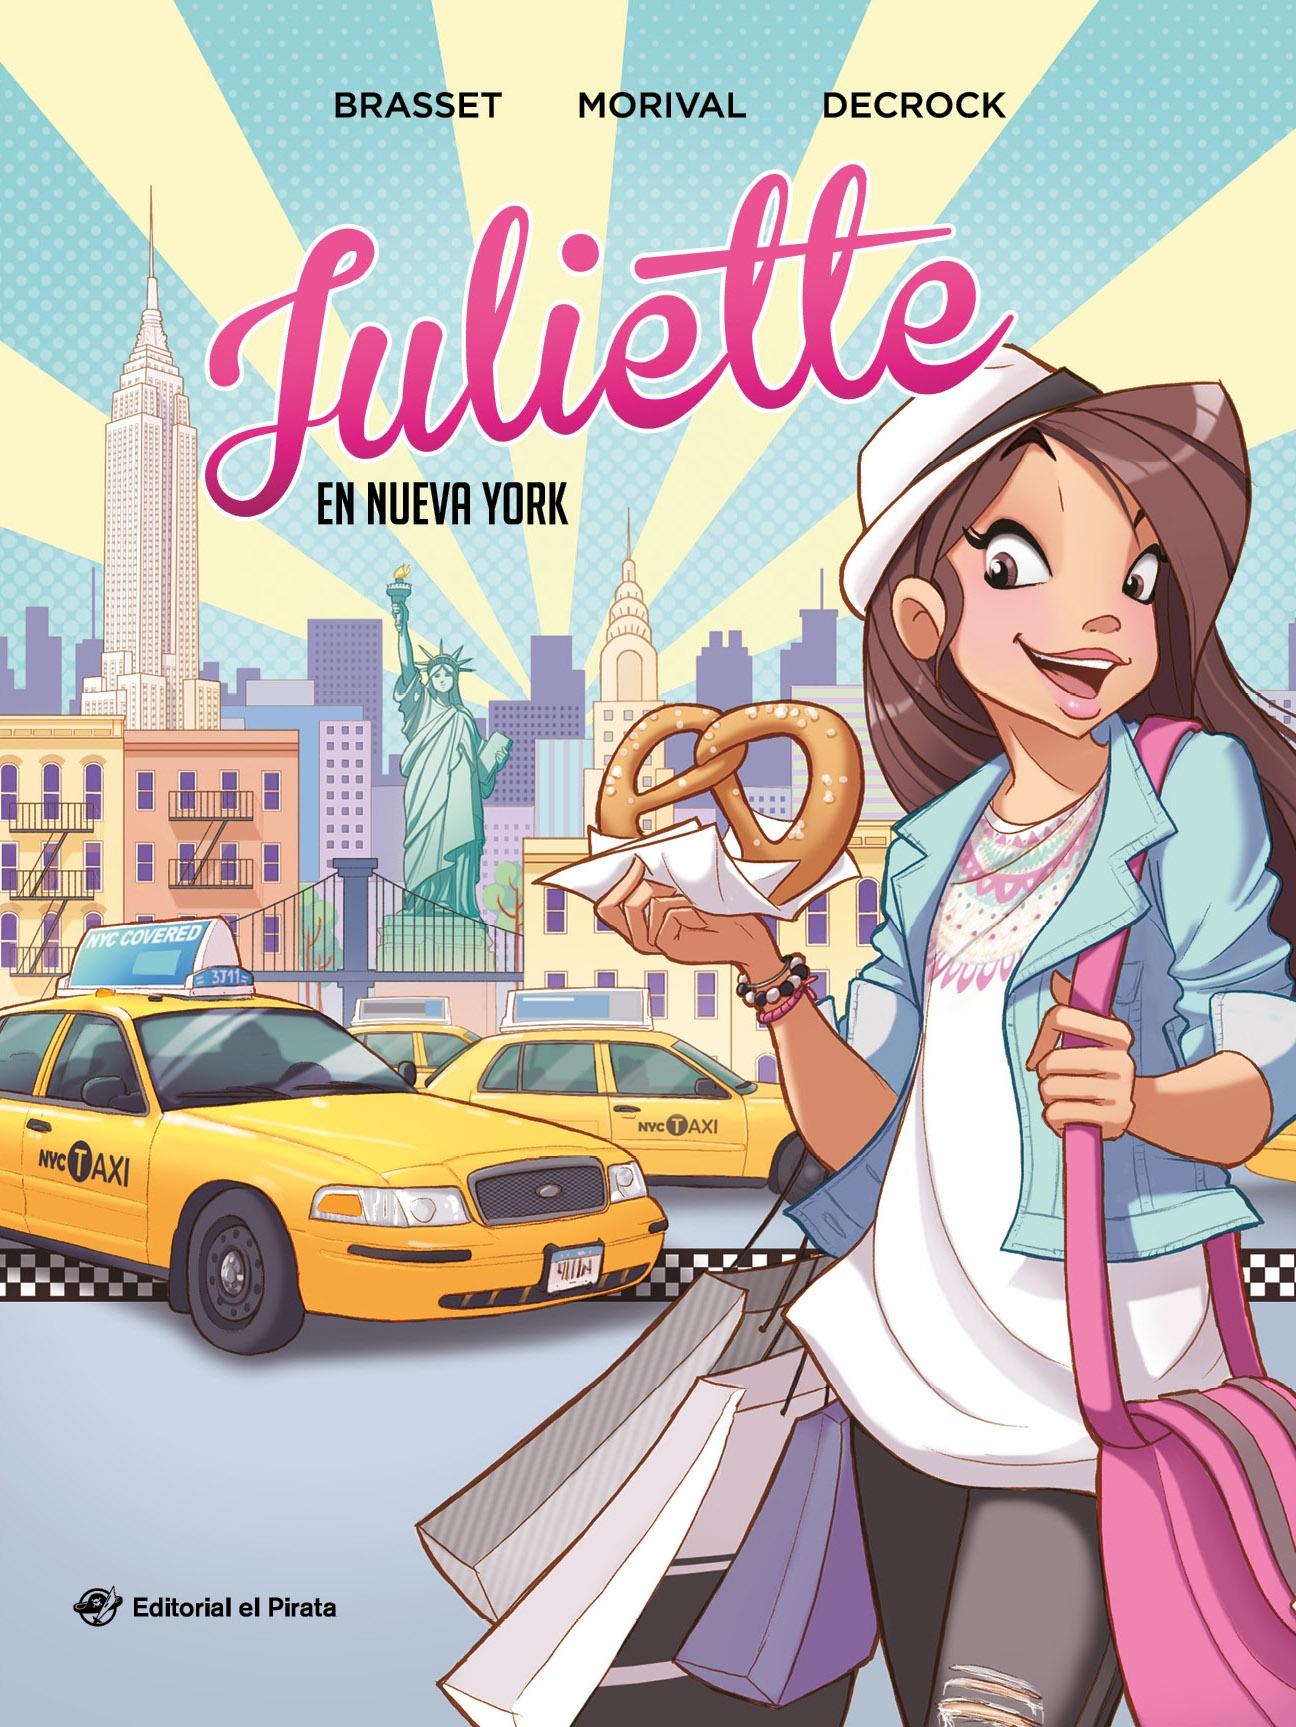 Juliette en Nueva York "Cómic Juvenil a Partir de 9 Años. ¡Descubre Nueva York con Juliette!"